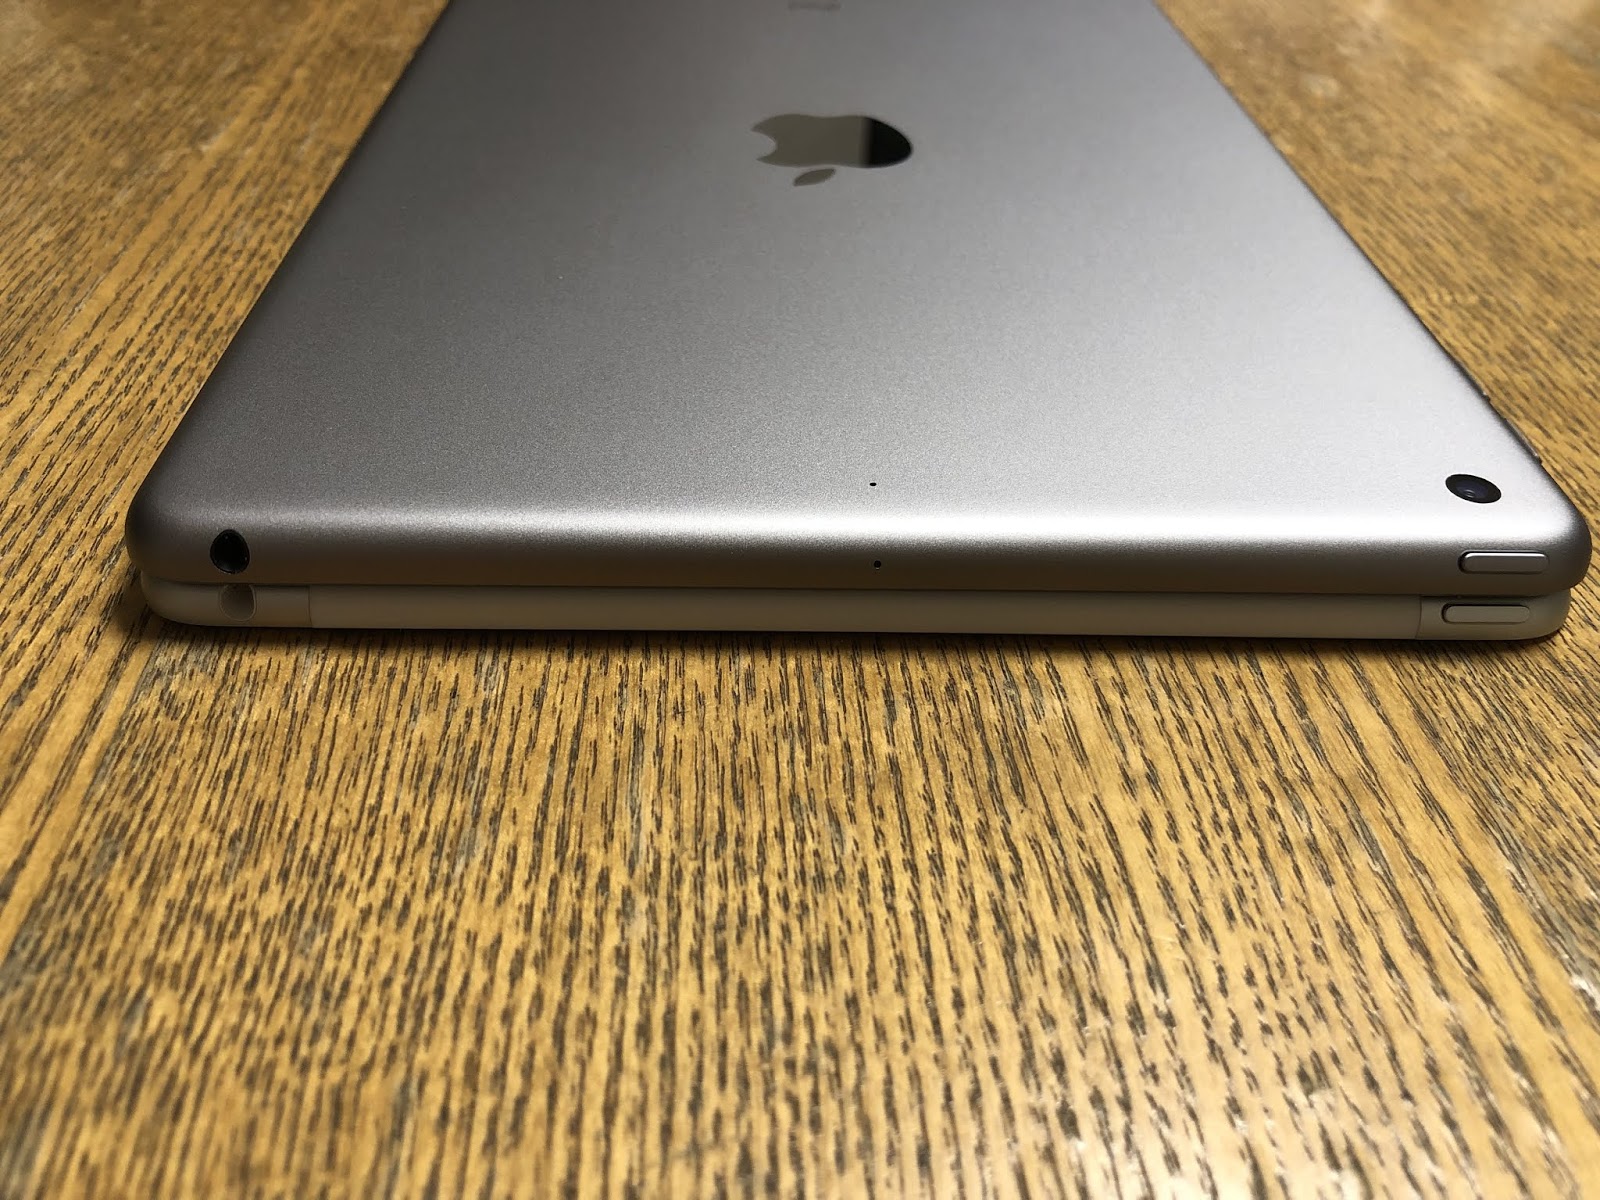 iPad 第6世代(2018年モデル)を購入